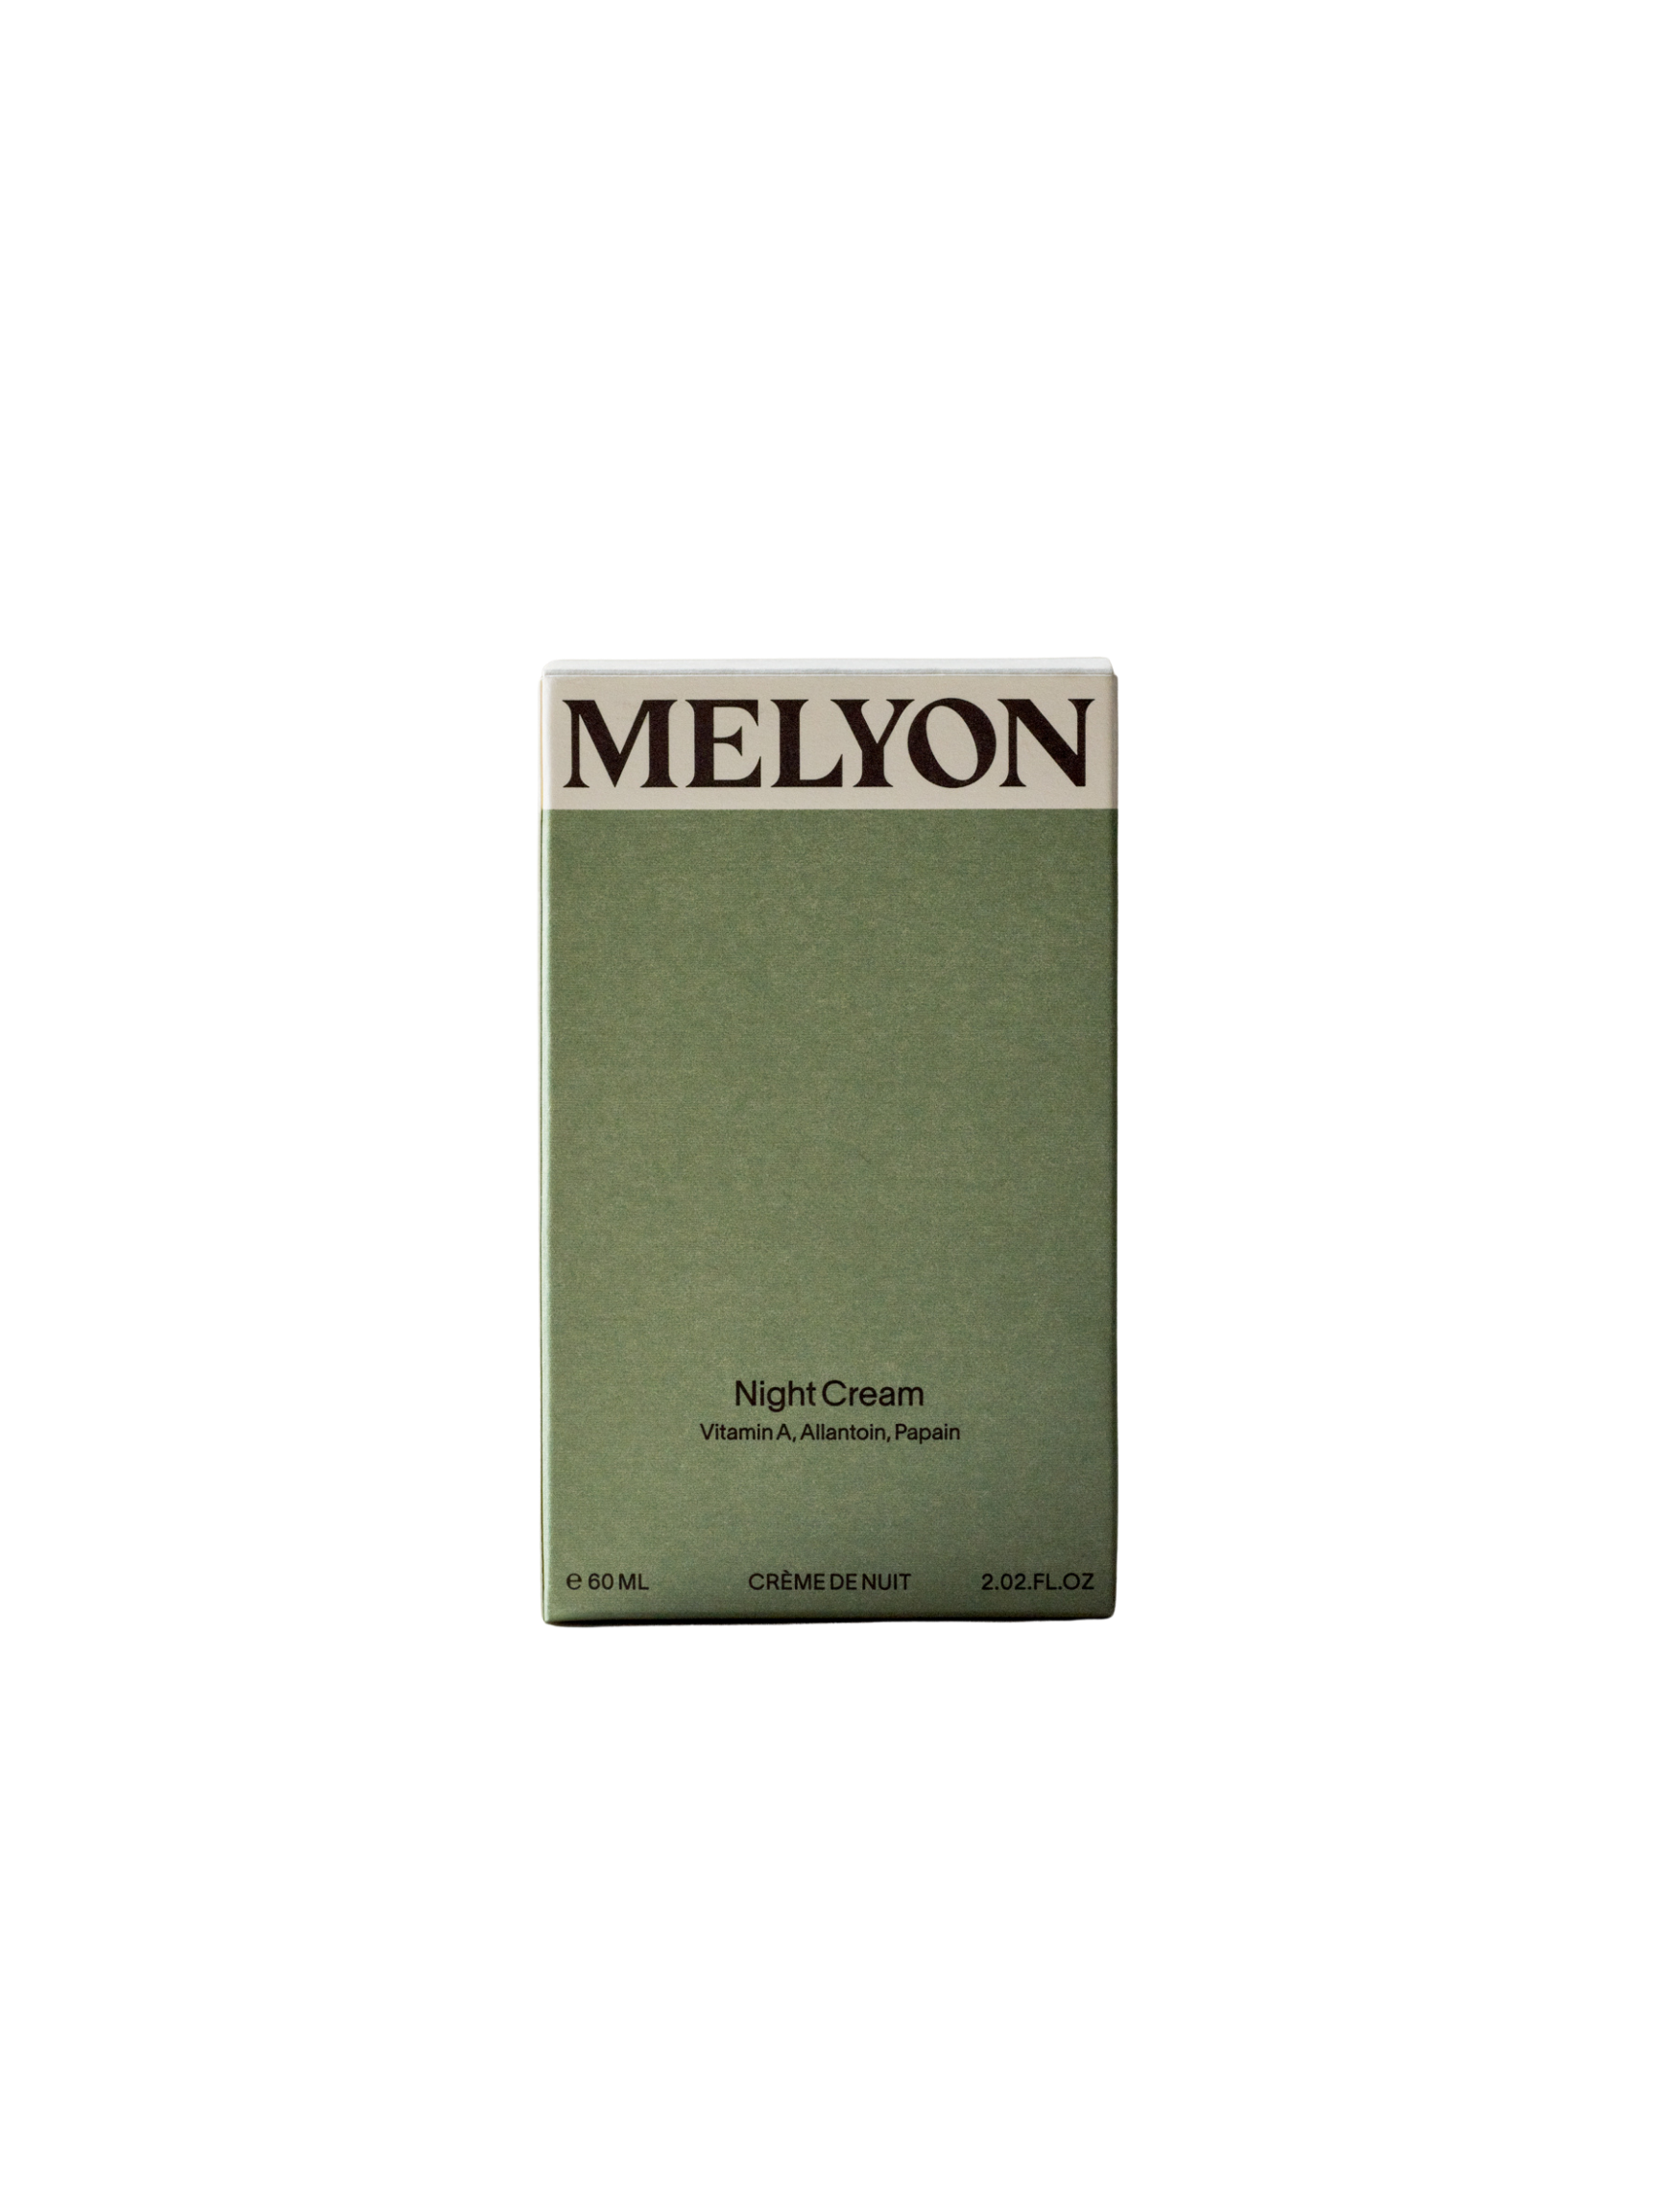 MELYON Night Cream 60mL, Facial cream, MELYON, PourHommies